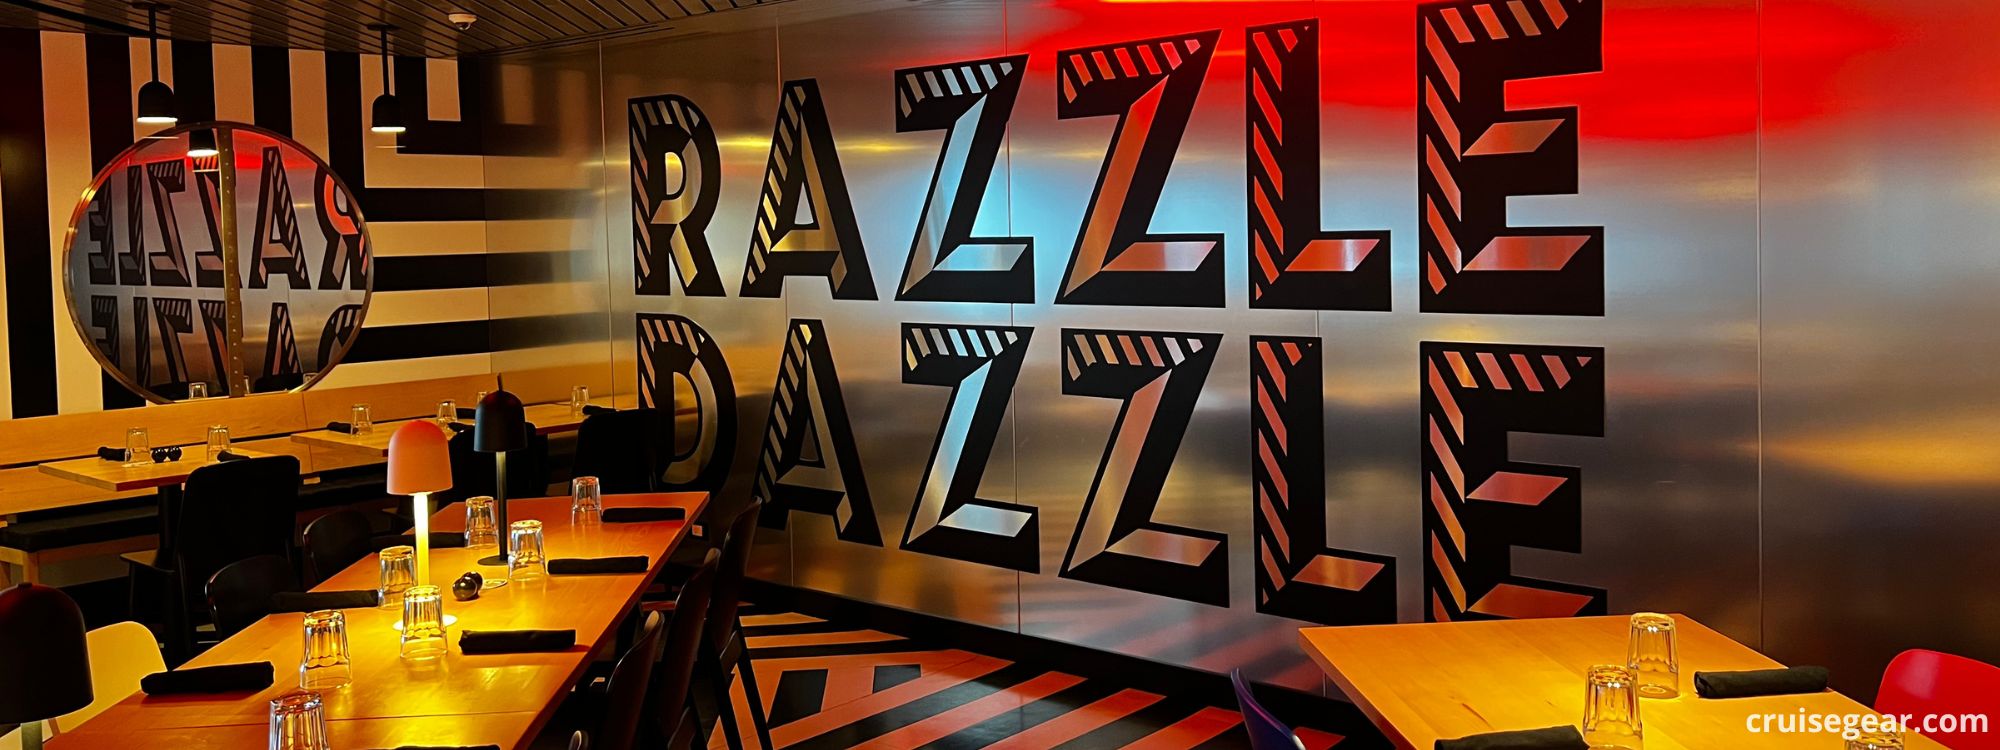 Razzle Dazzle Virgin Voyages – Menu, 360 Virtual Tour & More